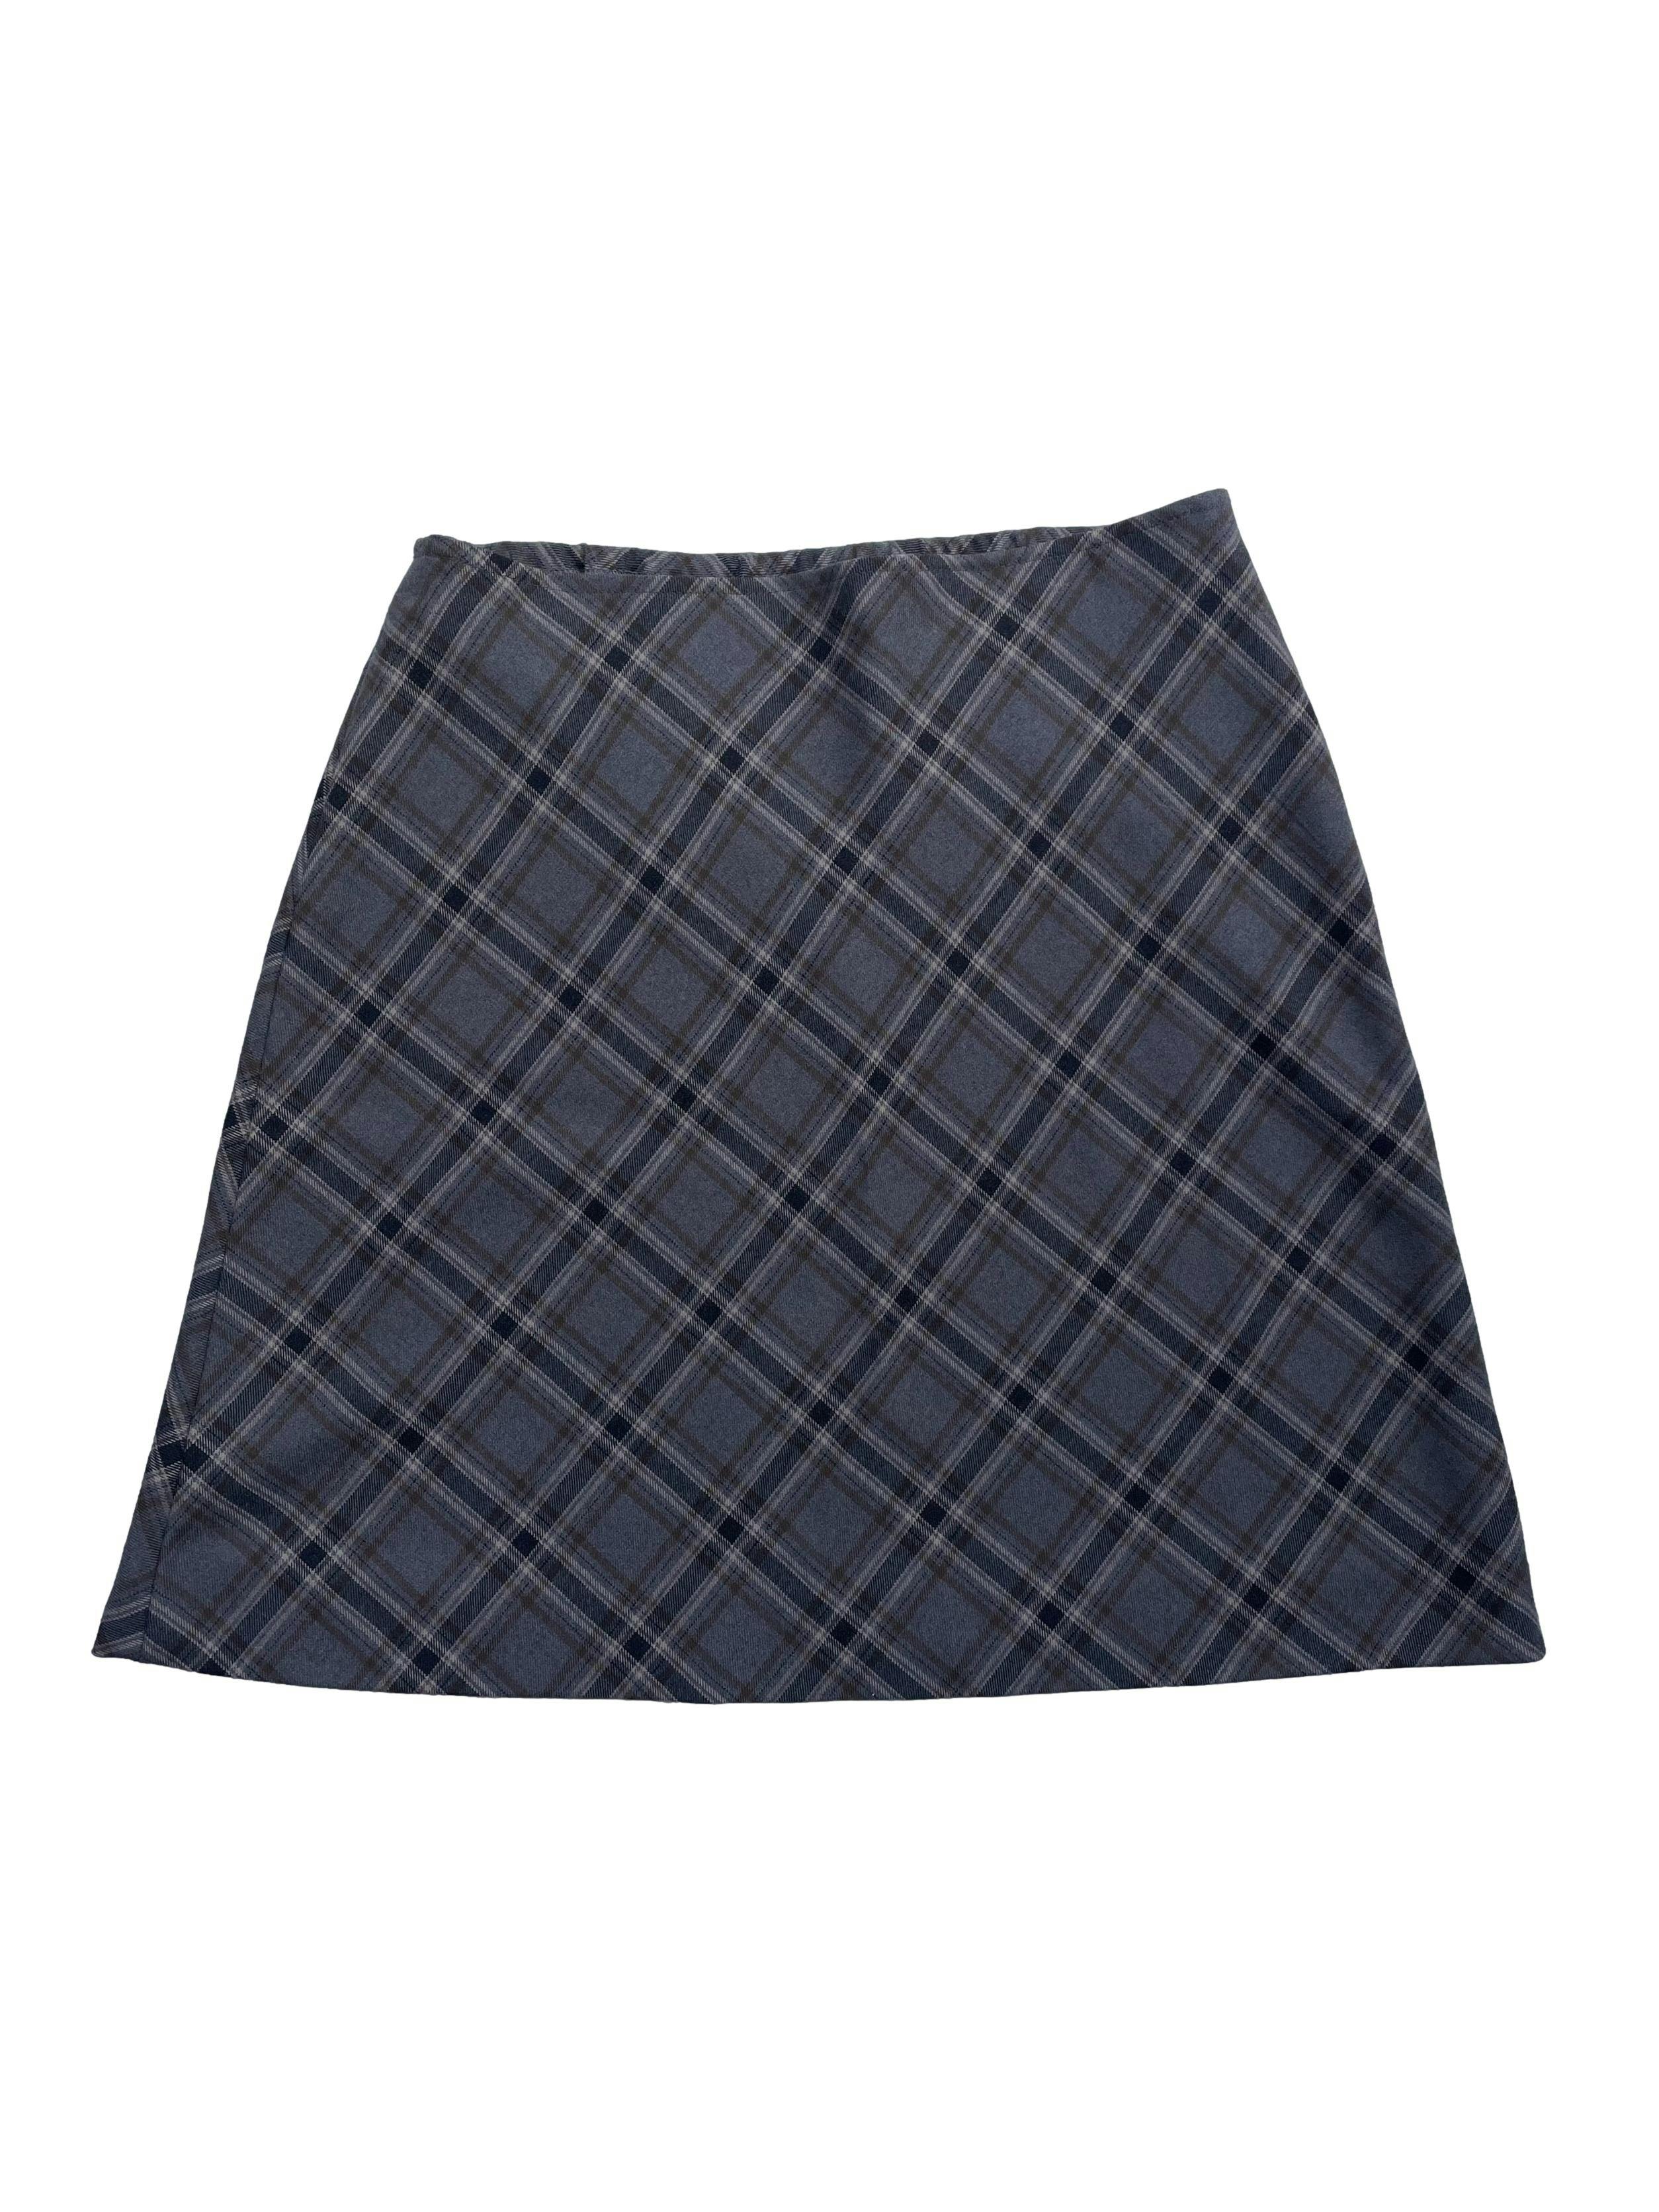 Falda tip lanilla escocés en tonos grises, elástico posterior en cintura, línea en A.  Cintura 75cm sin estirar Largo 49cm.